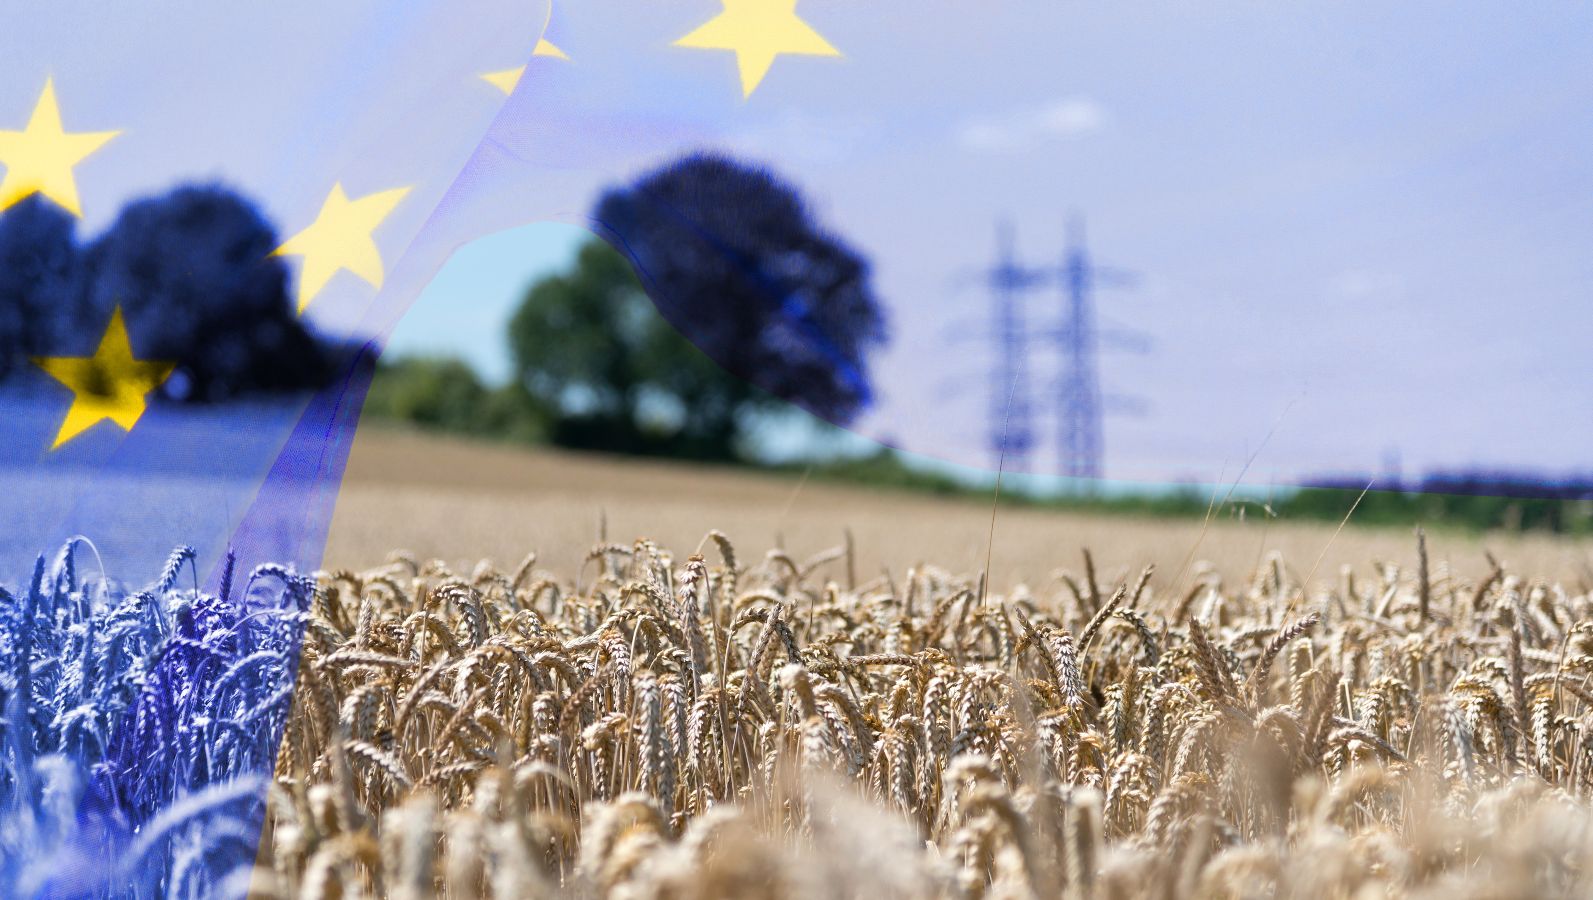 Eine transparente Flagge der Europäischen Union weht in das Landschaftsbild eines Kornfeldes. Im Hintergrund erkennt man die verschwommene Siluette vereinzelter Bäume sowie eines Höchstspannungsmastes.